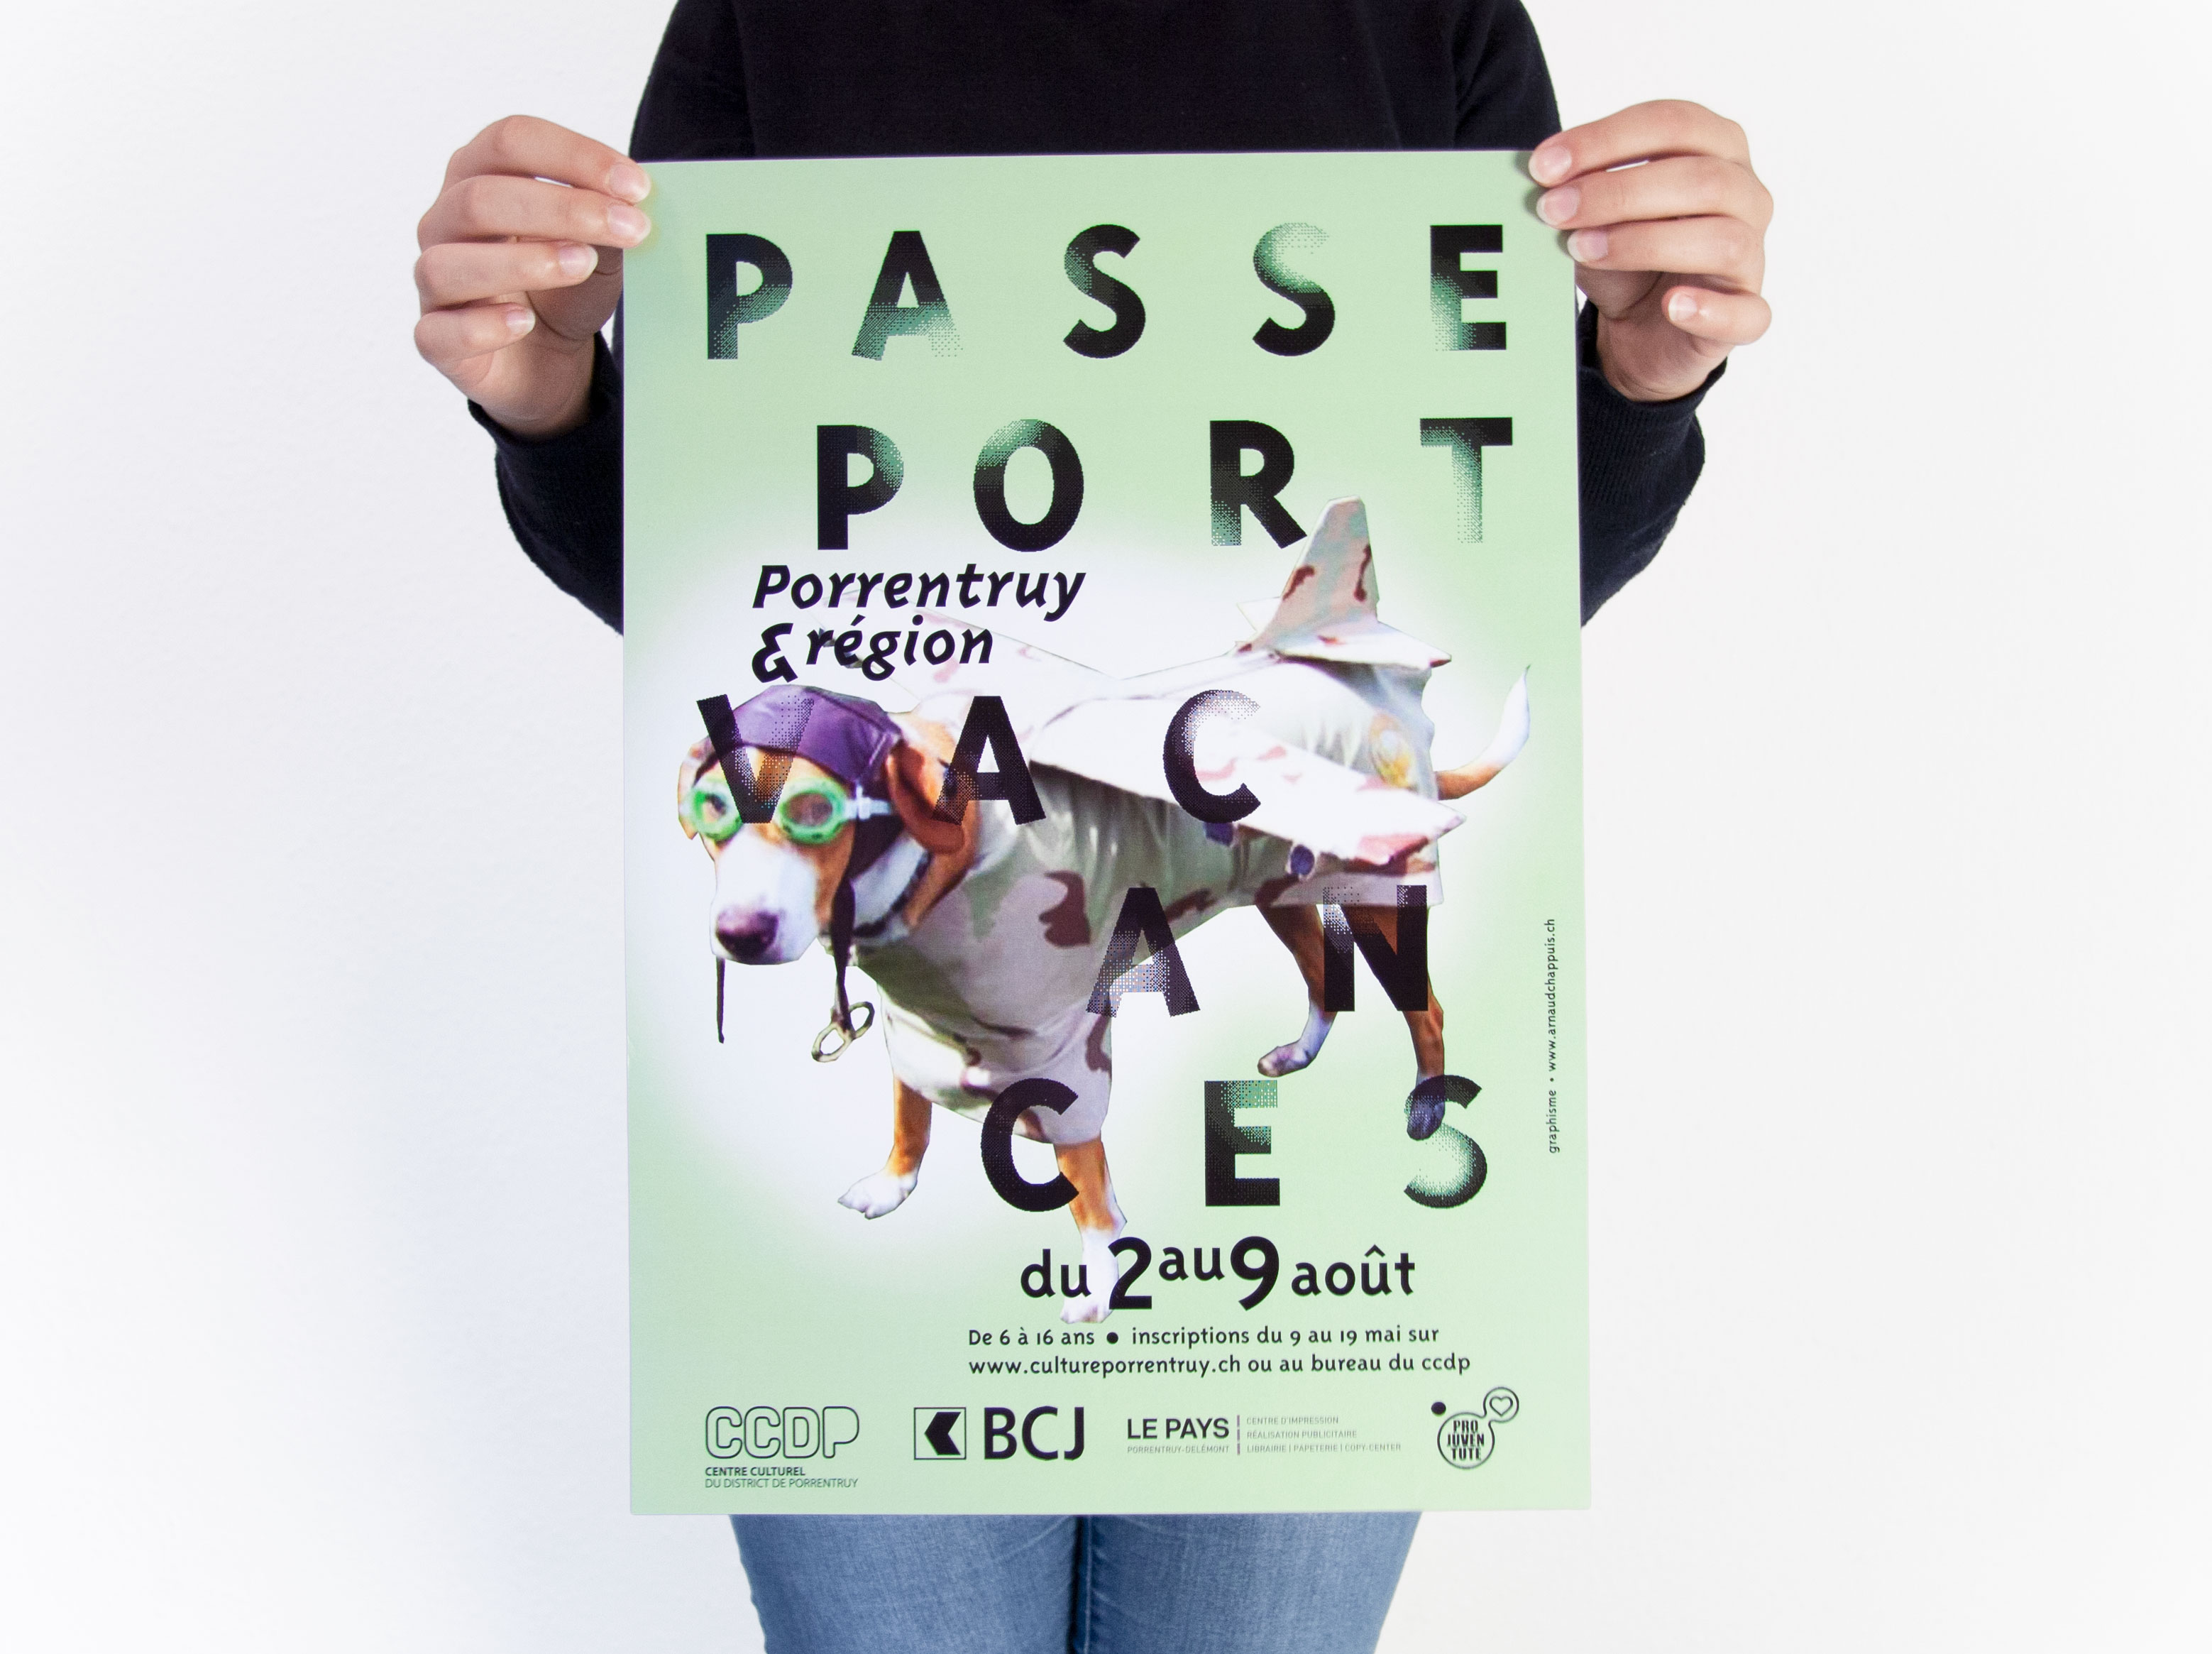 passeport-vacances Porrentruy - 2016 - 2017 - chiens aviateurs - centre culturel du district de Porrentruy - ccdp - graphisme arnaud chappuis